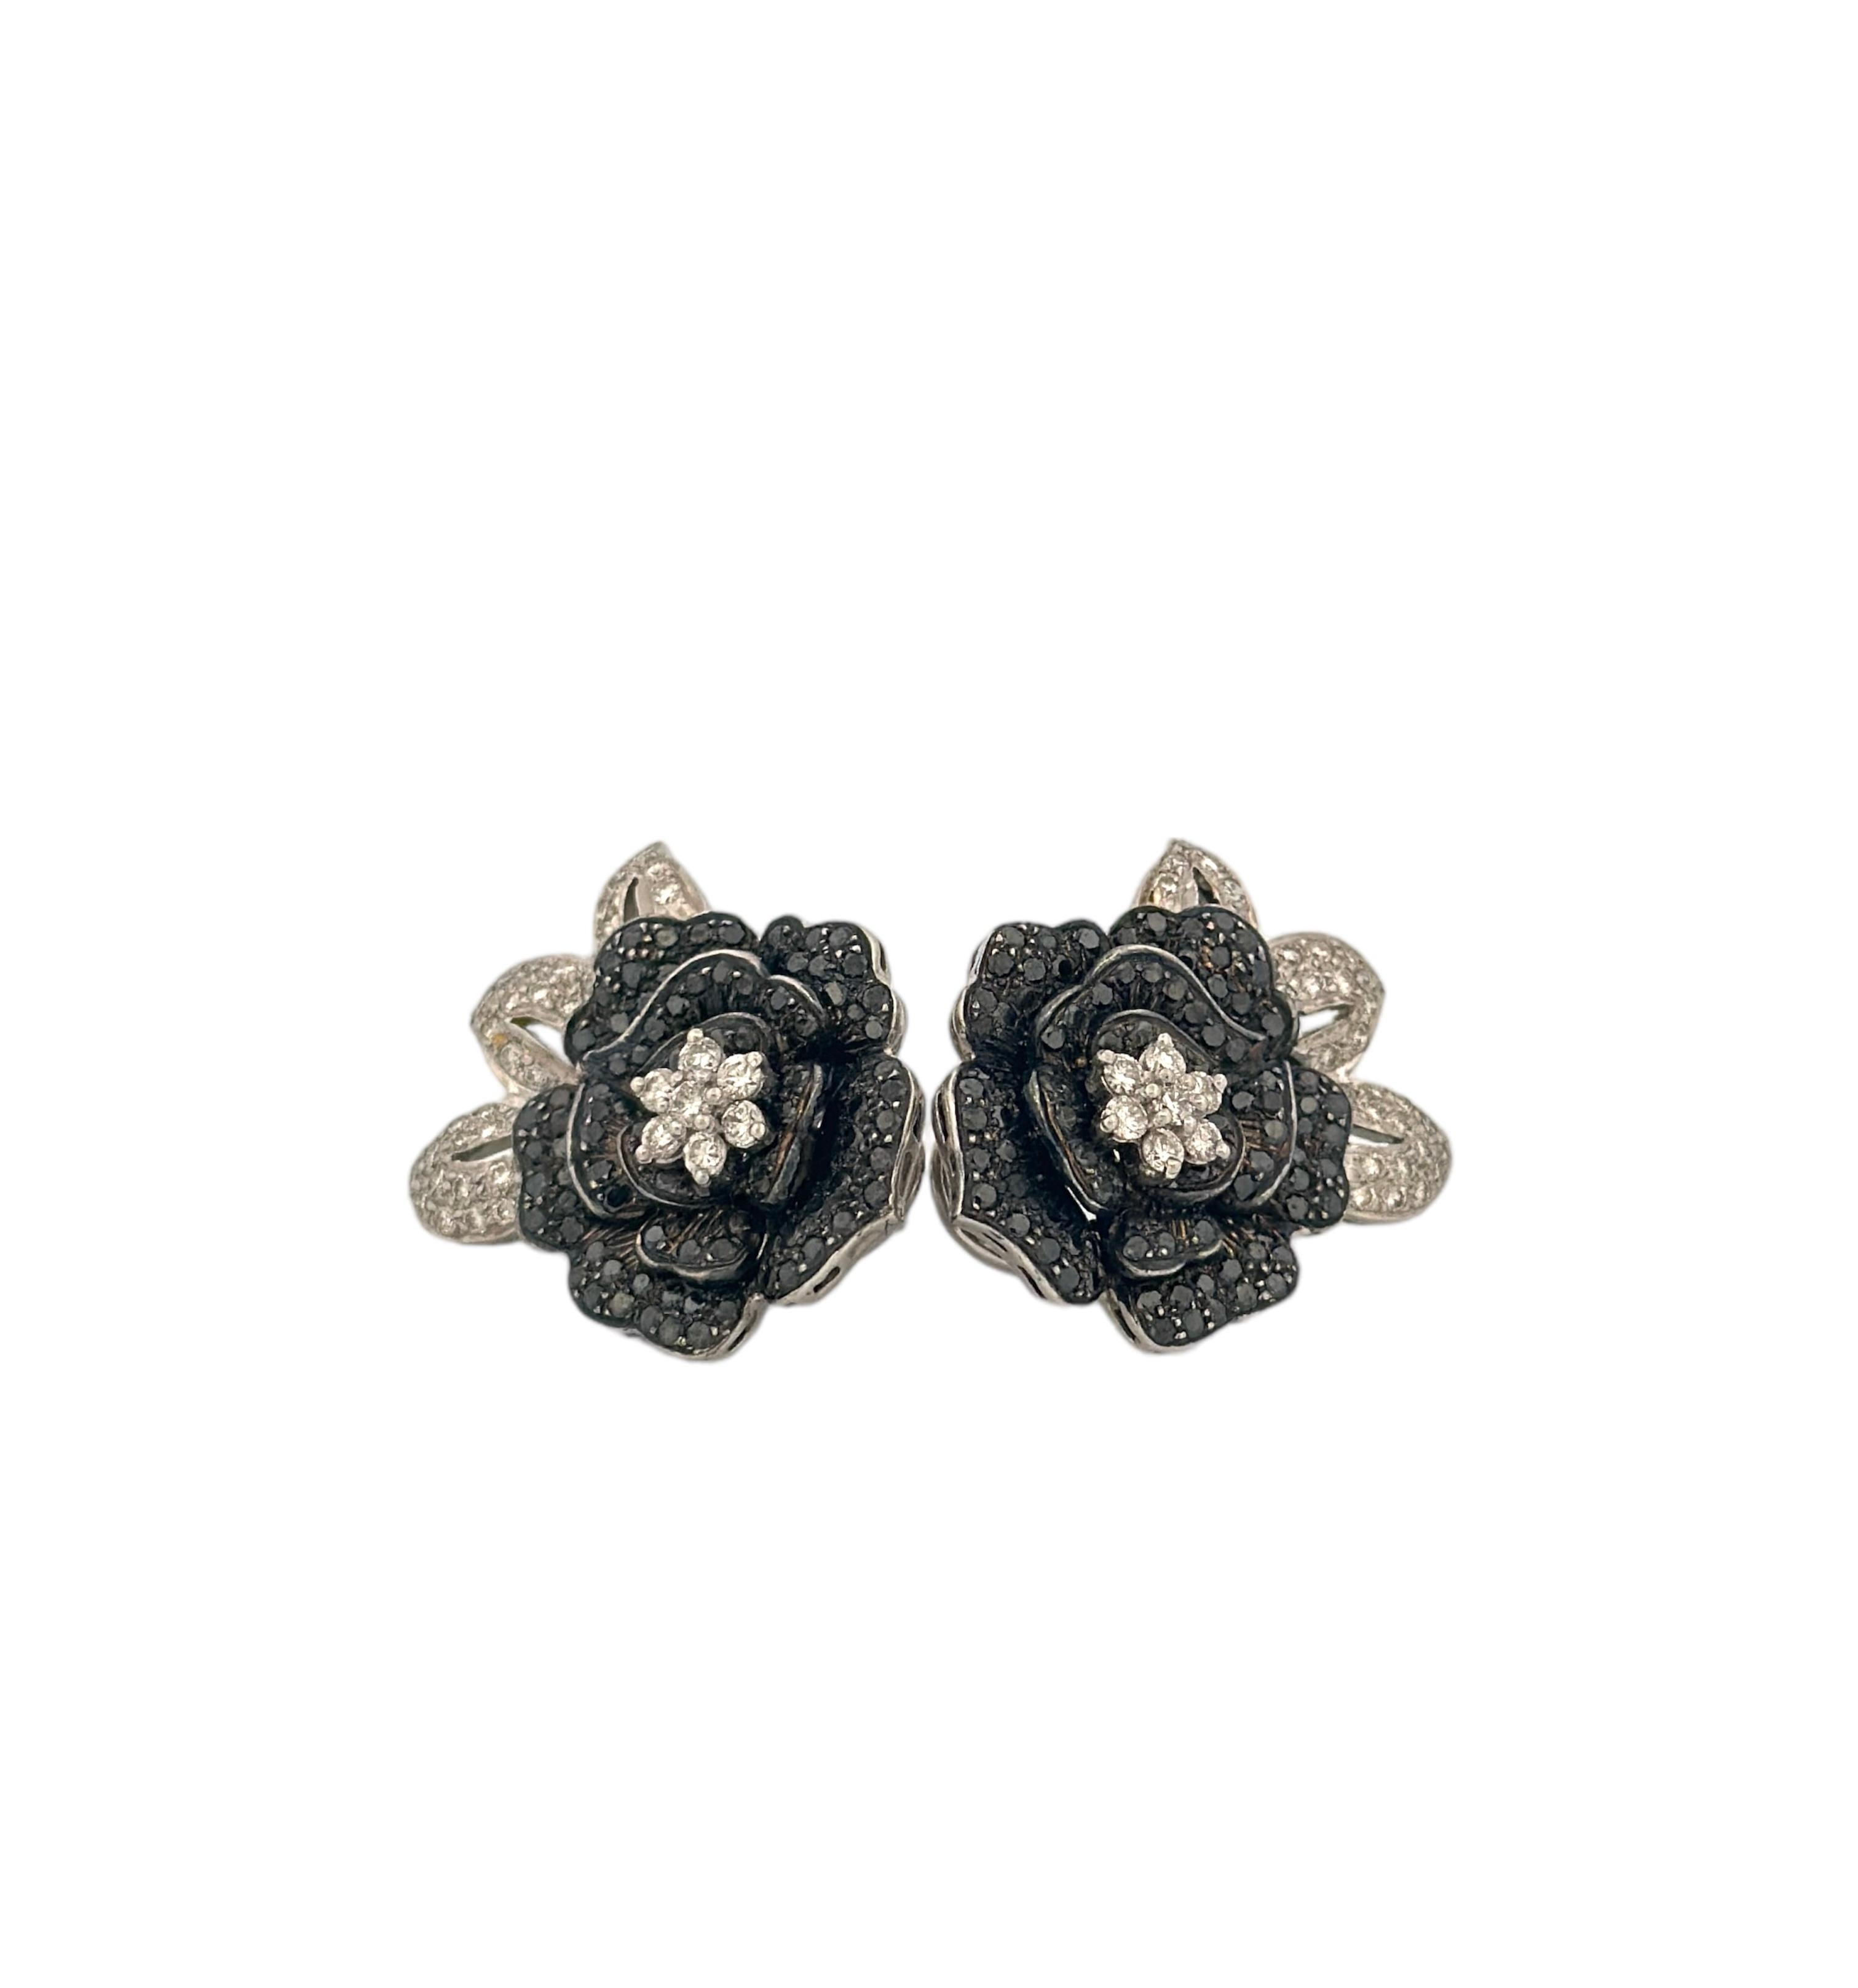 Retro Rose Flower Shaped Fancy Black & White Diamond Earrings For Sale